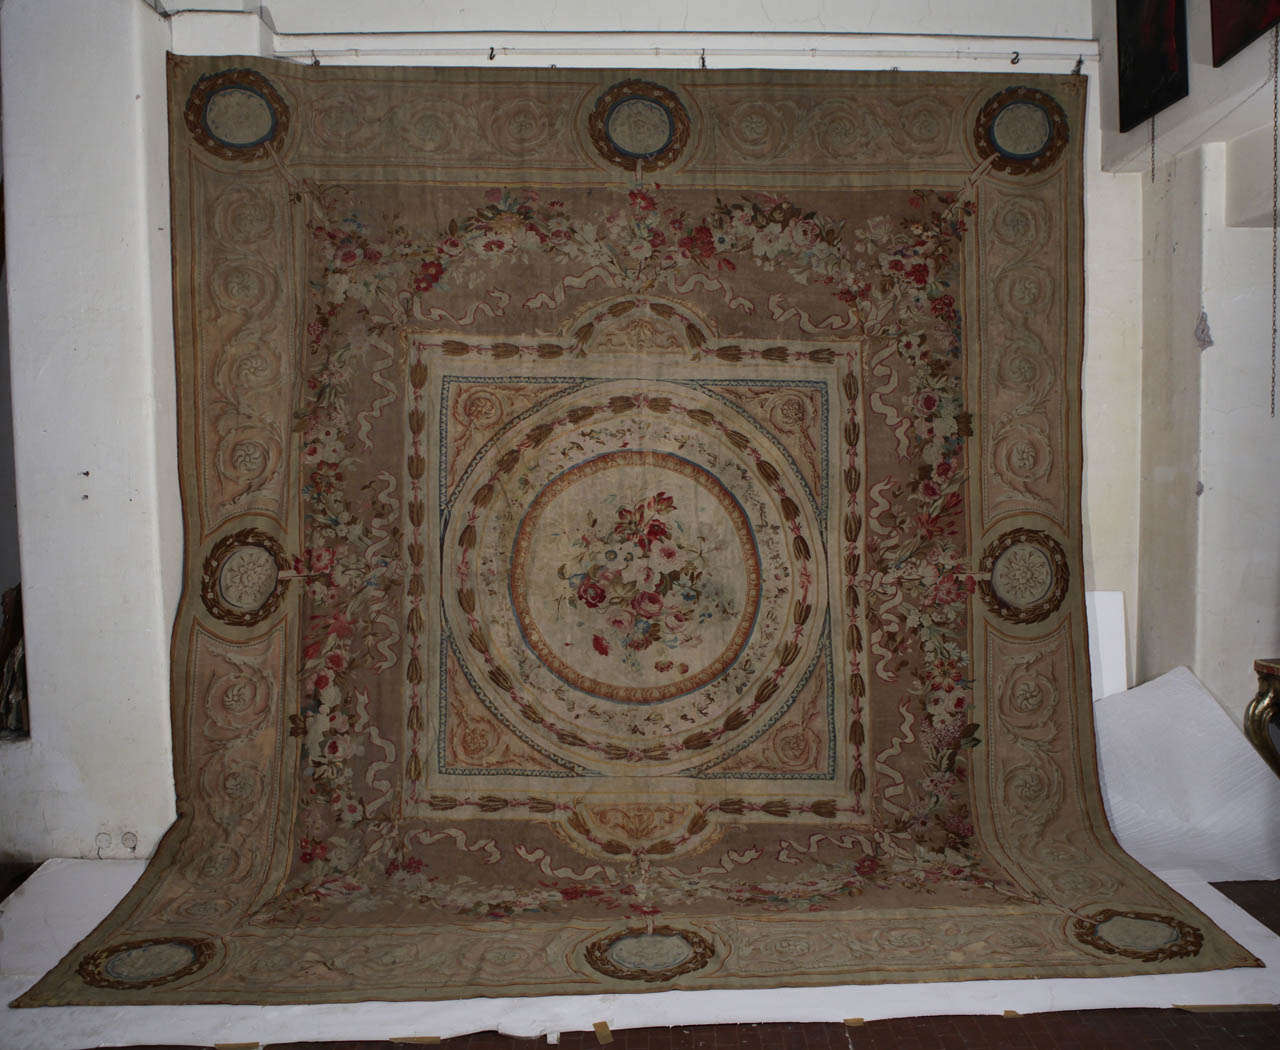 Très beau tapis français d'Aubusson du 19e siècle.
Dimensions : cm 530 x 480.